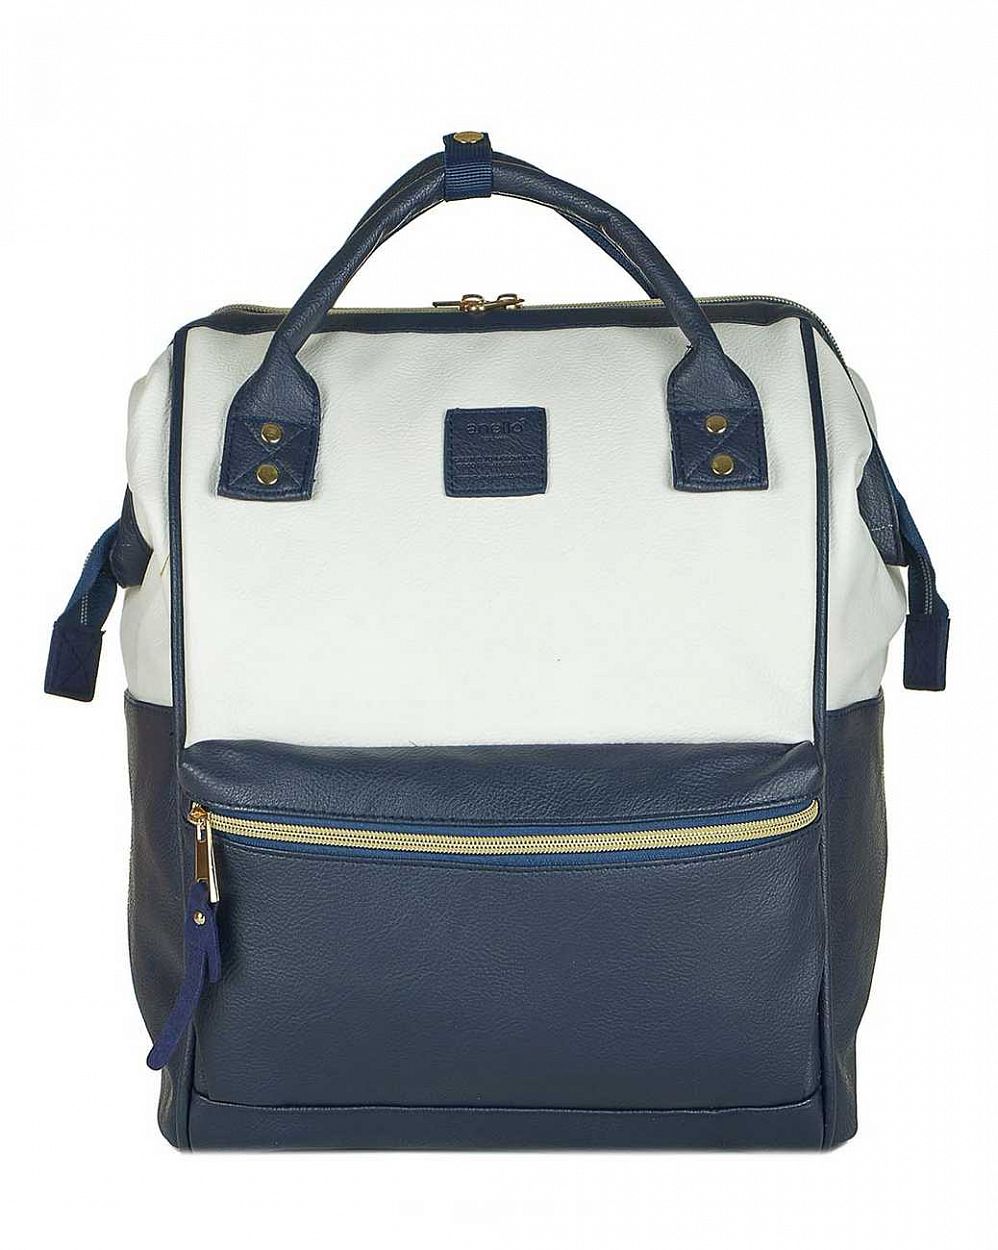 Рюкзак с двумя ручками кожаный средний Anello Navy White отзывы